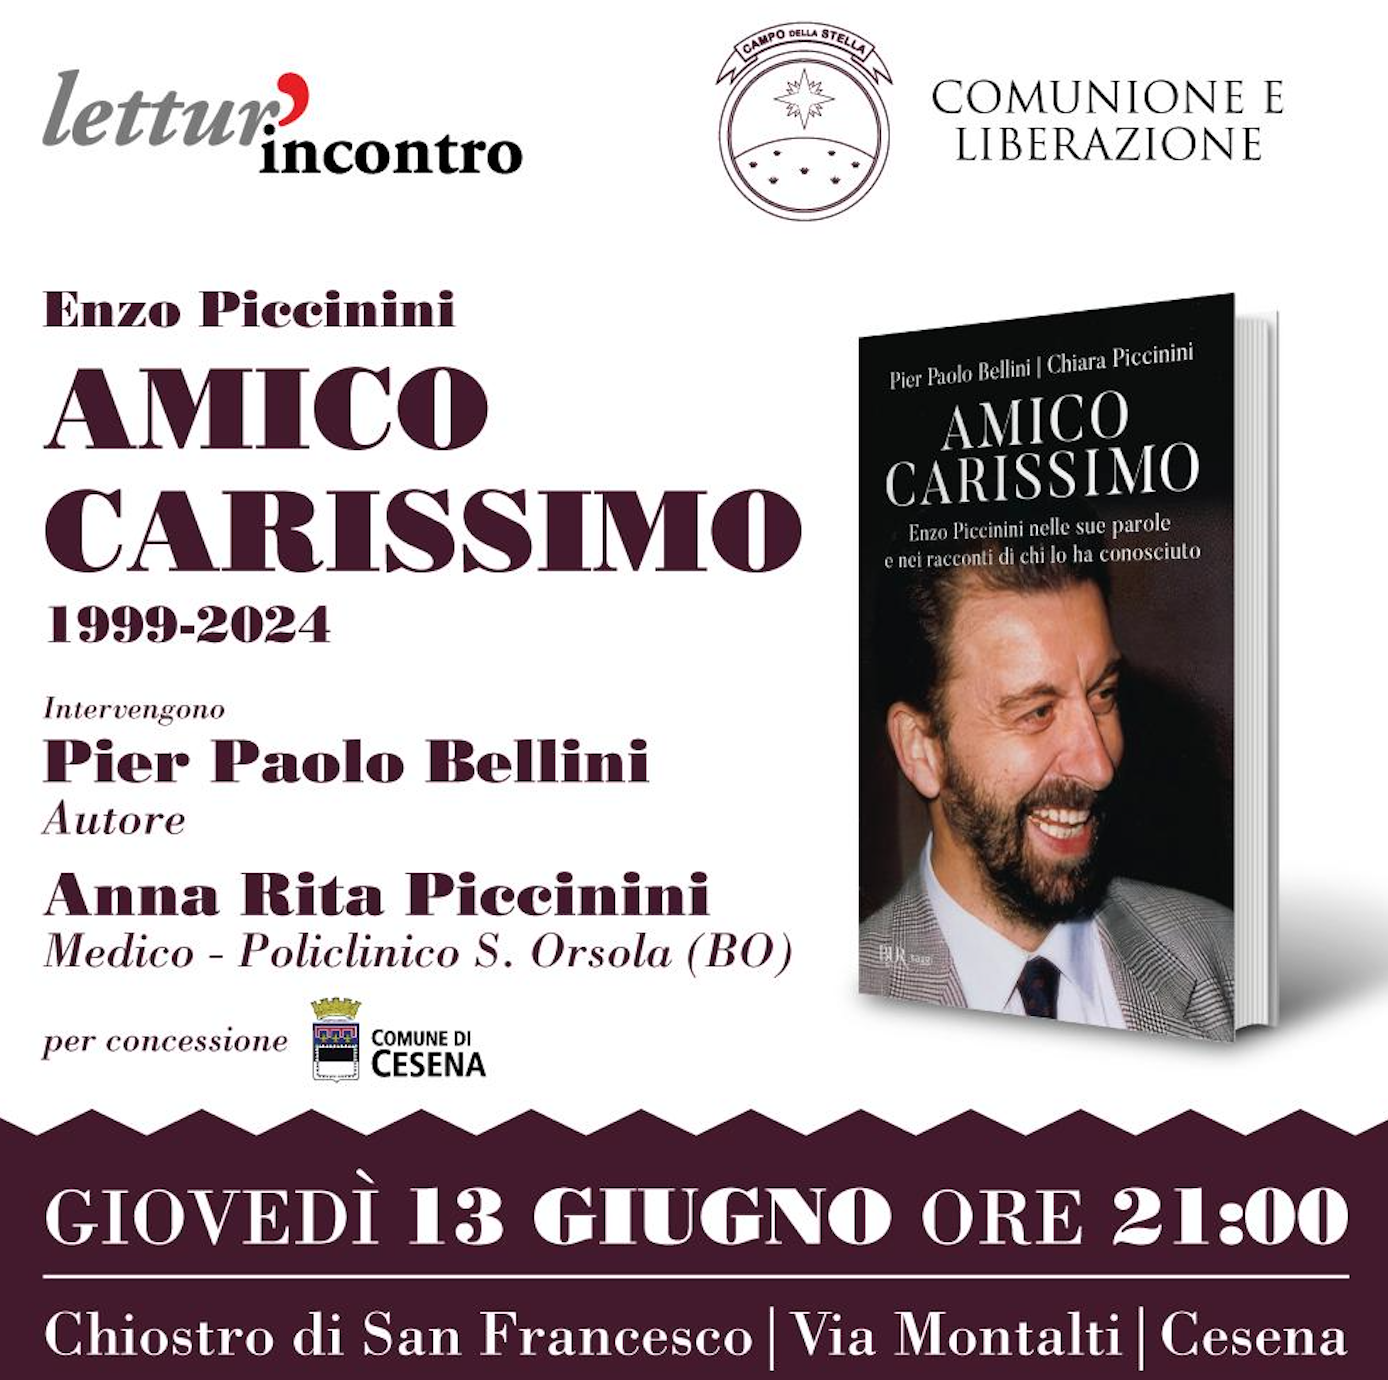 Featured image for “Cesena: Enzo Piccinini. Amico carissimo 1999-2024”